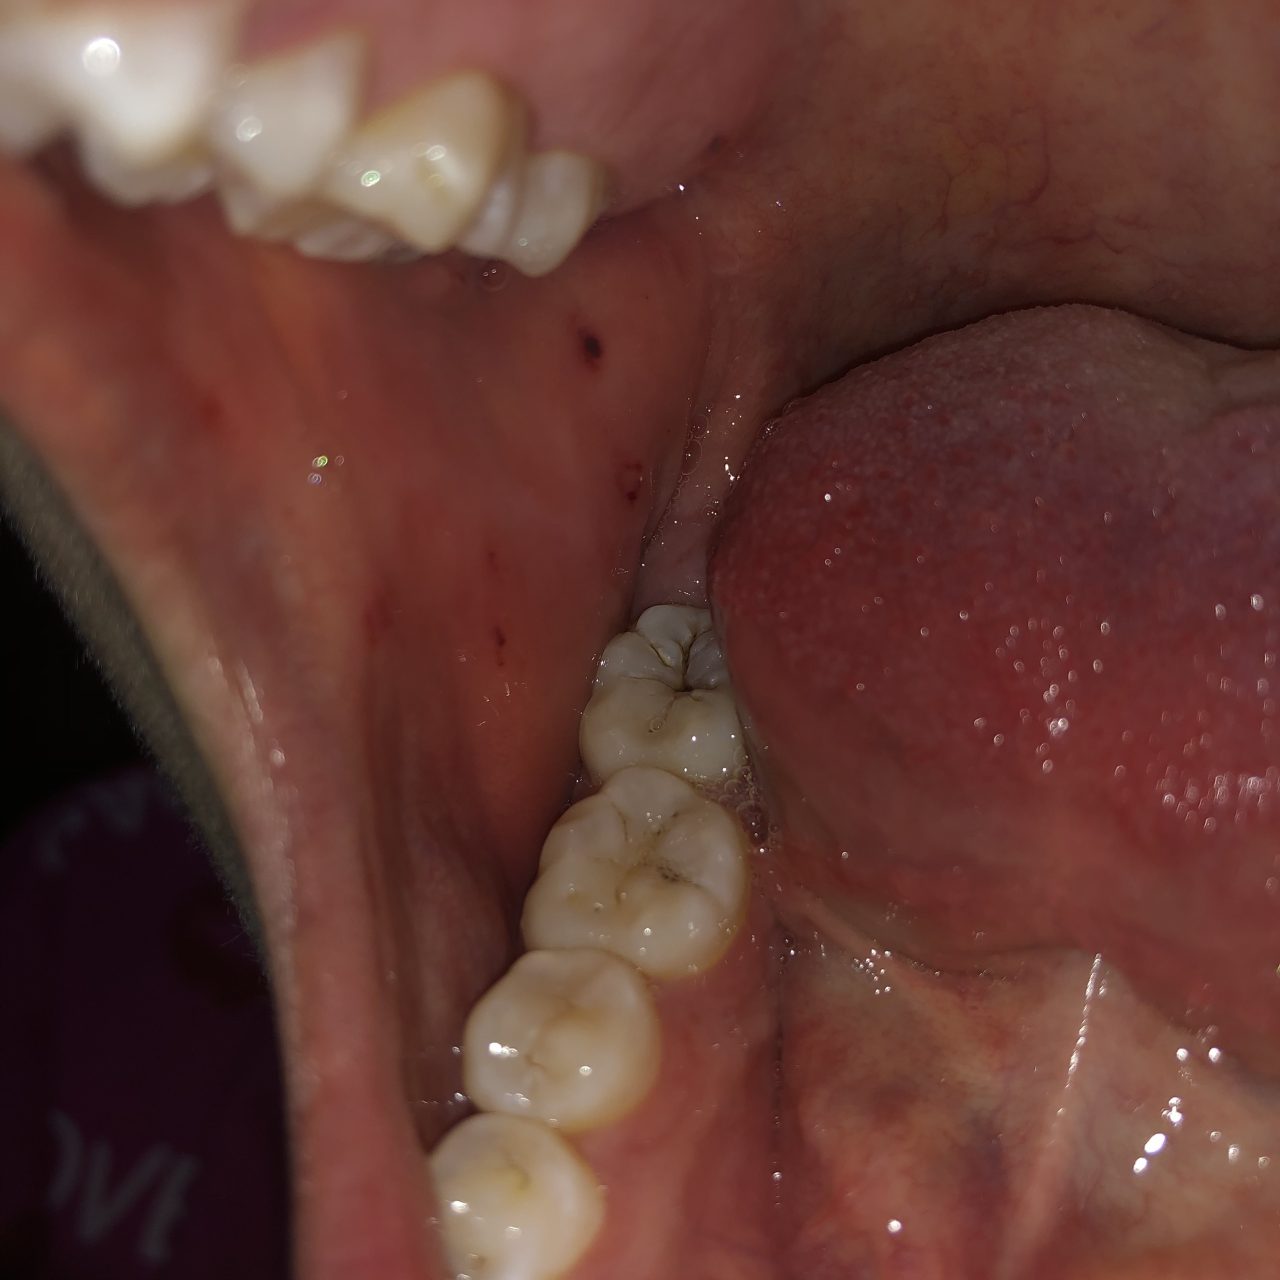 Viêm má trong miệng: triệu chứng, nguyên nhân và cách điều trị?